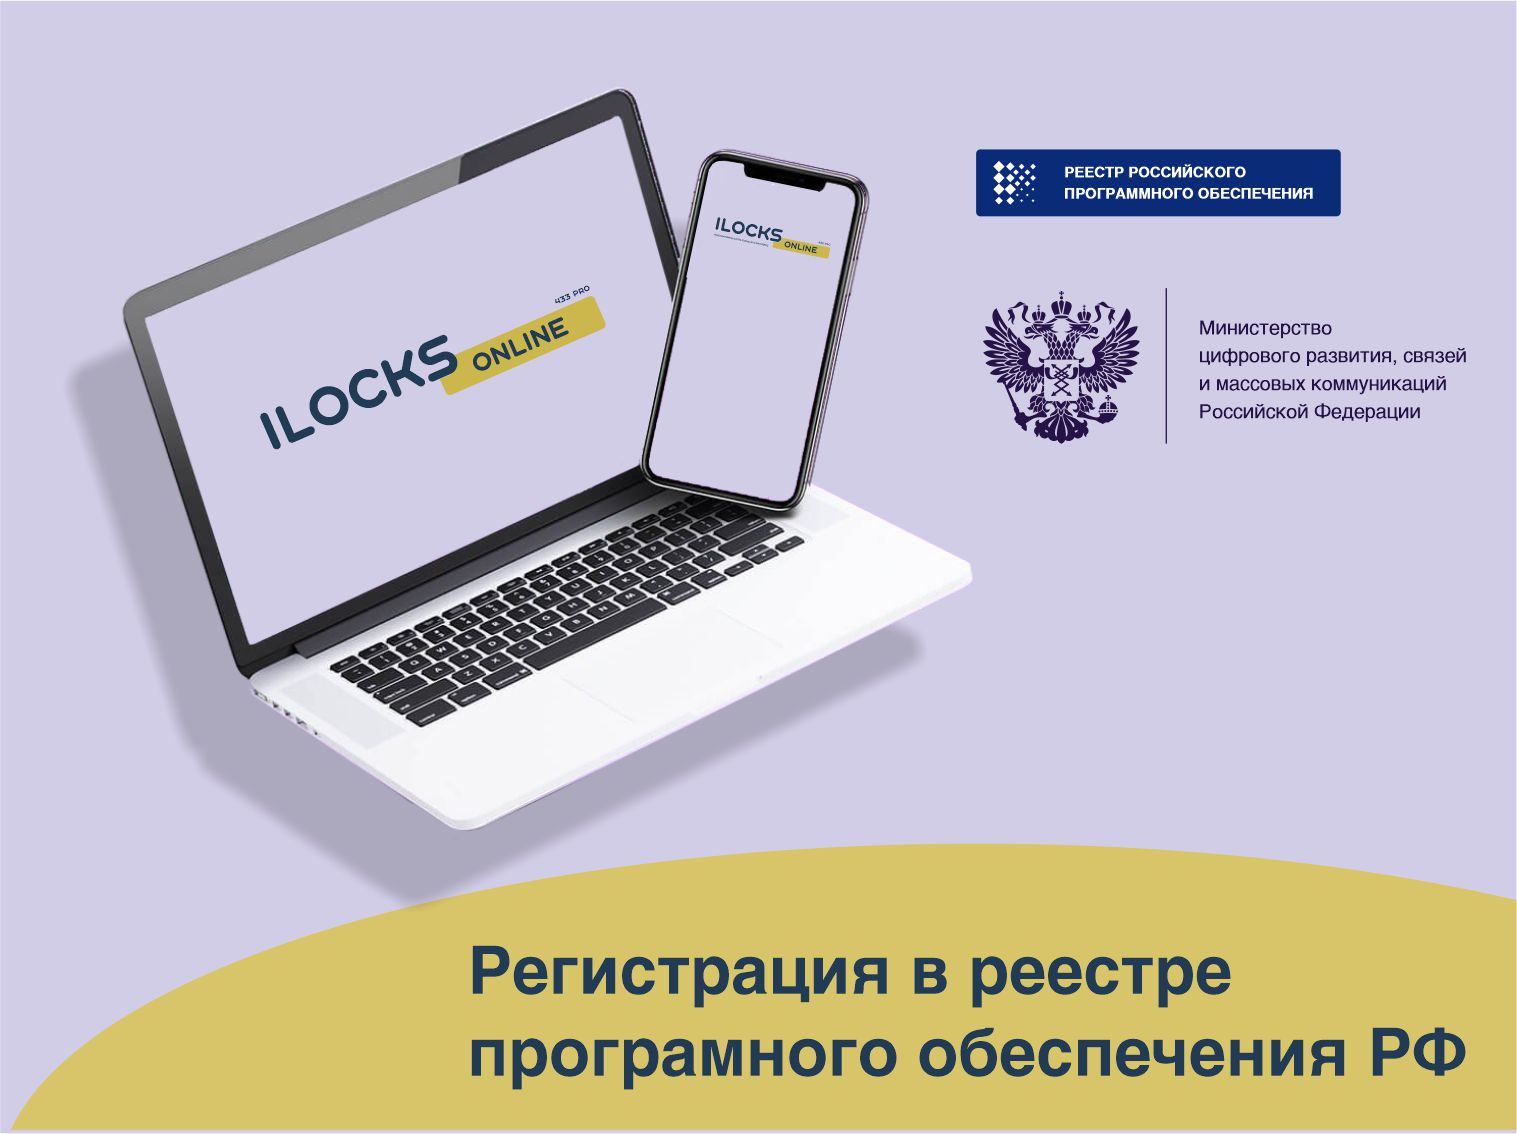 Программное обеспечение iLocks Online зарегистрировано в государственном реестре отечественного программного обеспечения РФ